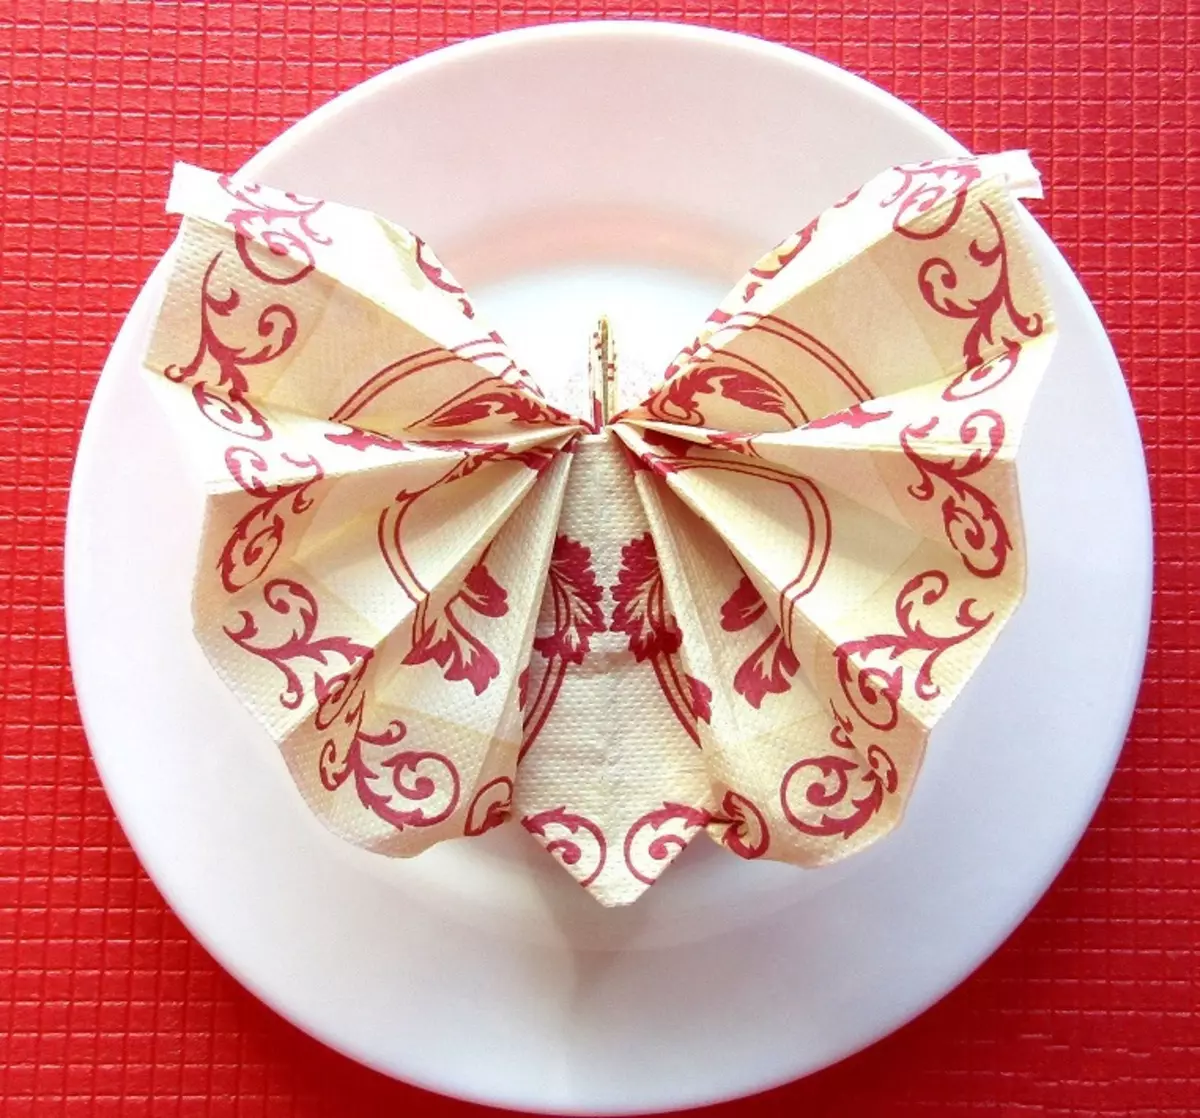 Sa e bukur të dele letër napkins në tryezë festive? 46 Skemat Photo Folding, si për të napkins origjinale kolaps për pushime 8215_11